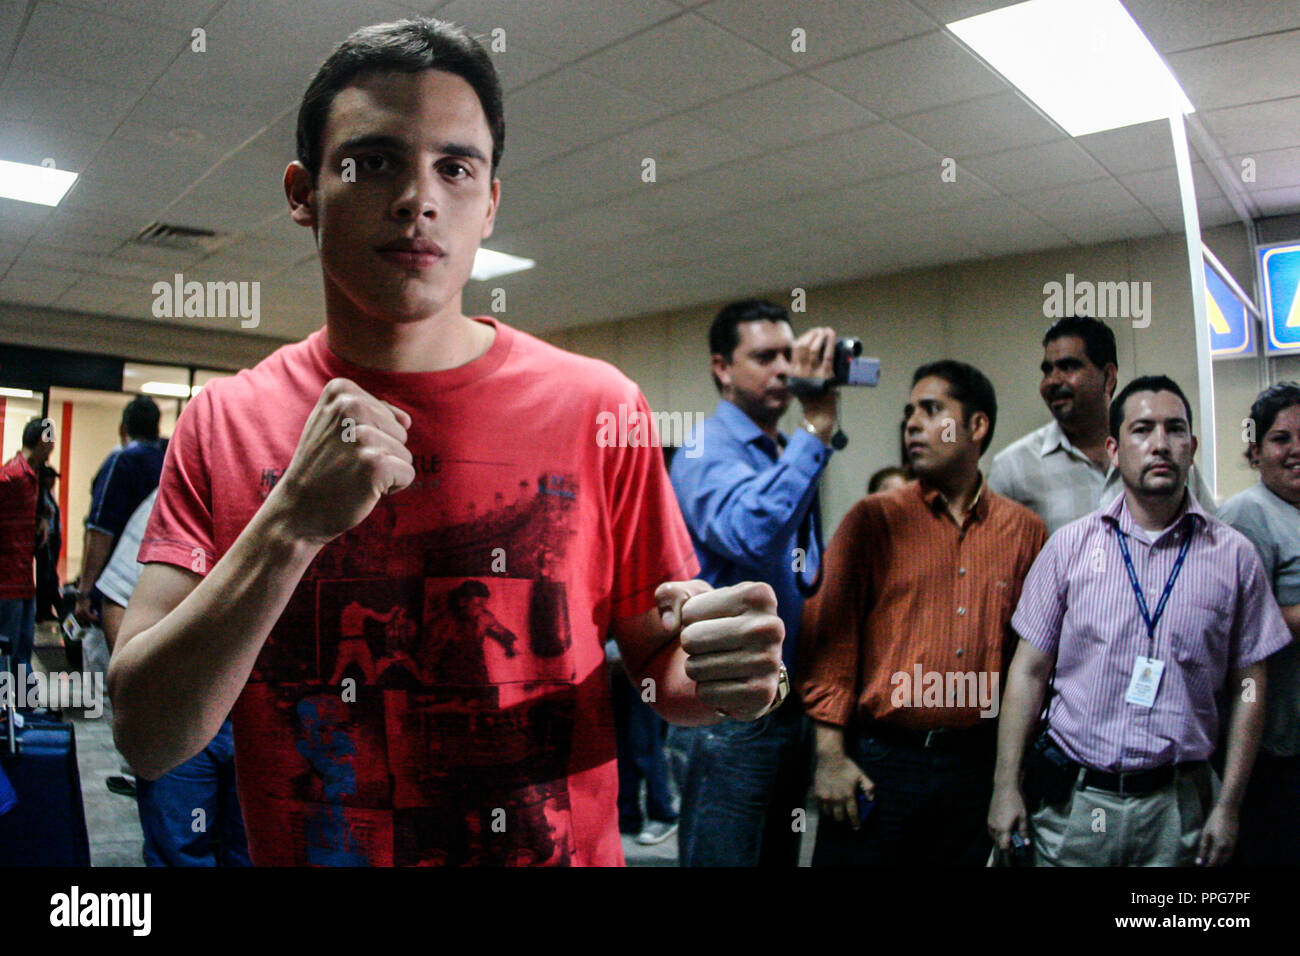 Julii Cesar Chavez jr ,Boxing acompañado del politico Epifanio Salido en el aeropuerto de Hermosillo, Sonora, Messico. Foto Stock